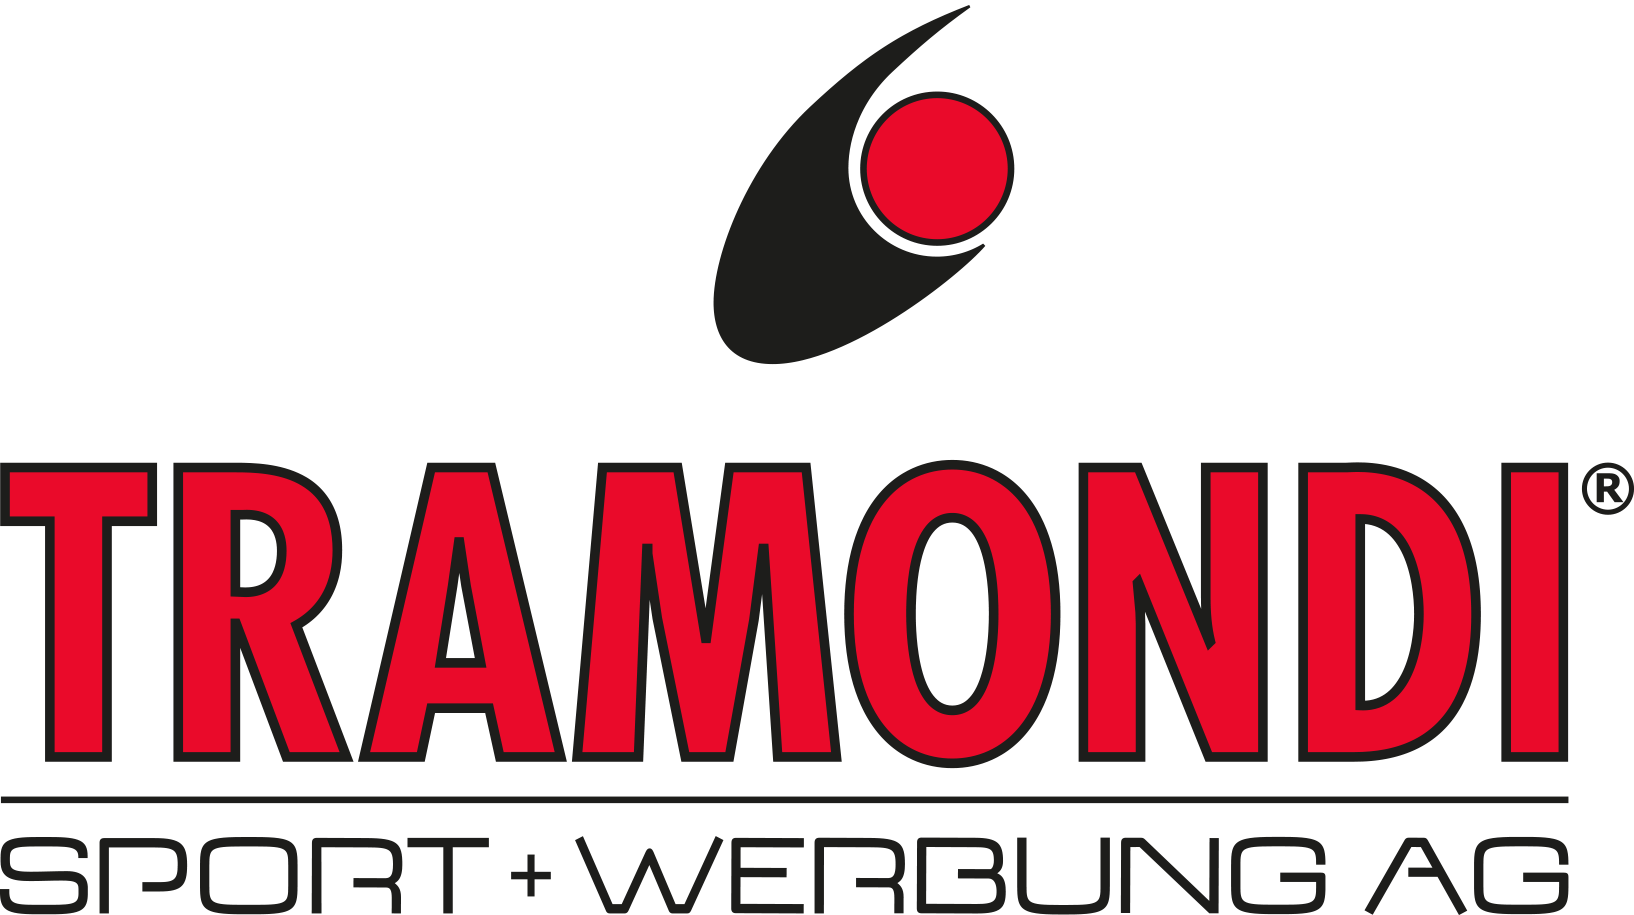 Tramondi Sport+Werbung AG - Ihr Spezialist für individuelle Werbeartikel und Sportbälle